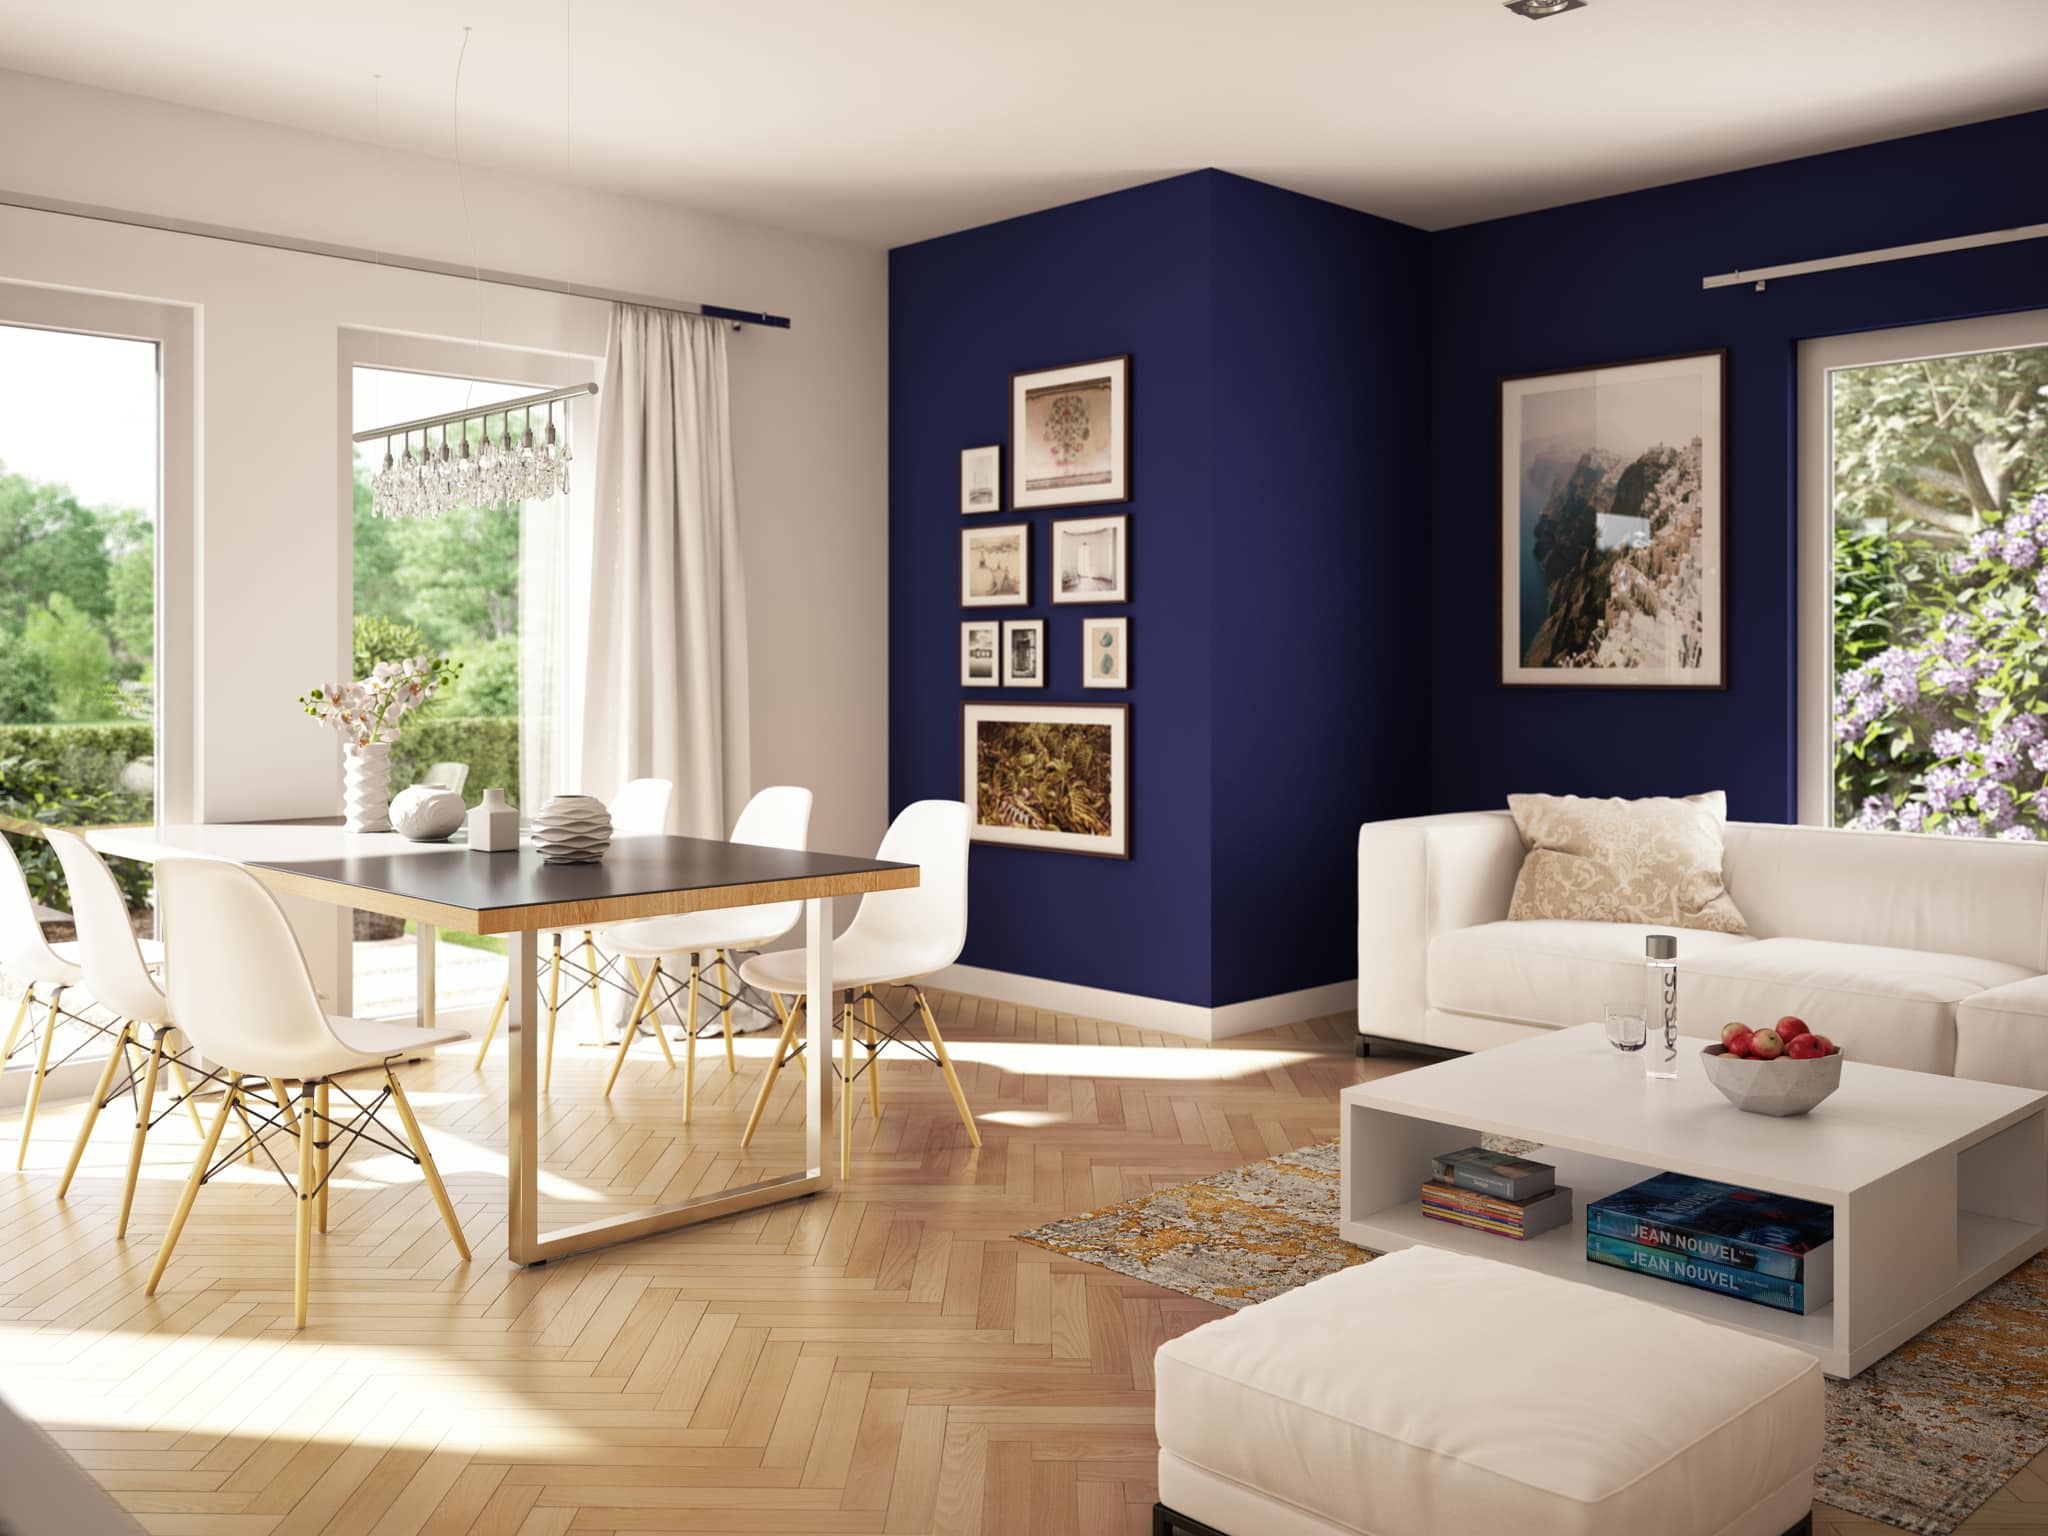 Wohnzimmer mit Essbereich - Wohnideen Fertighaus Living Haus SUNSHINE 136 V4 - HausbauDirekt.de